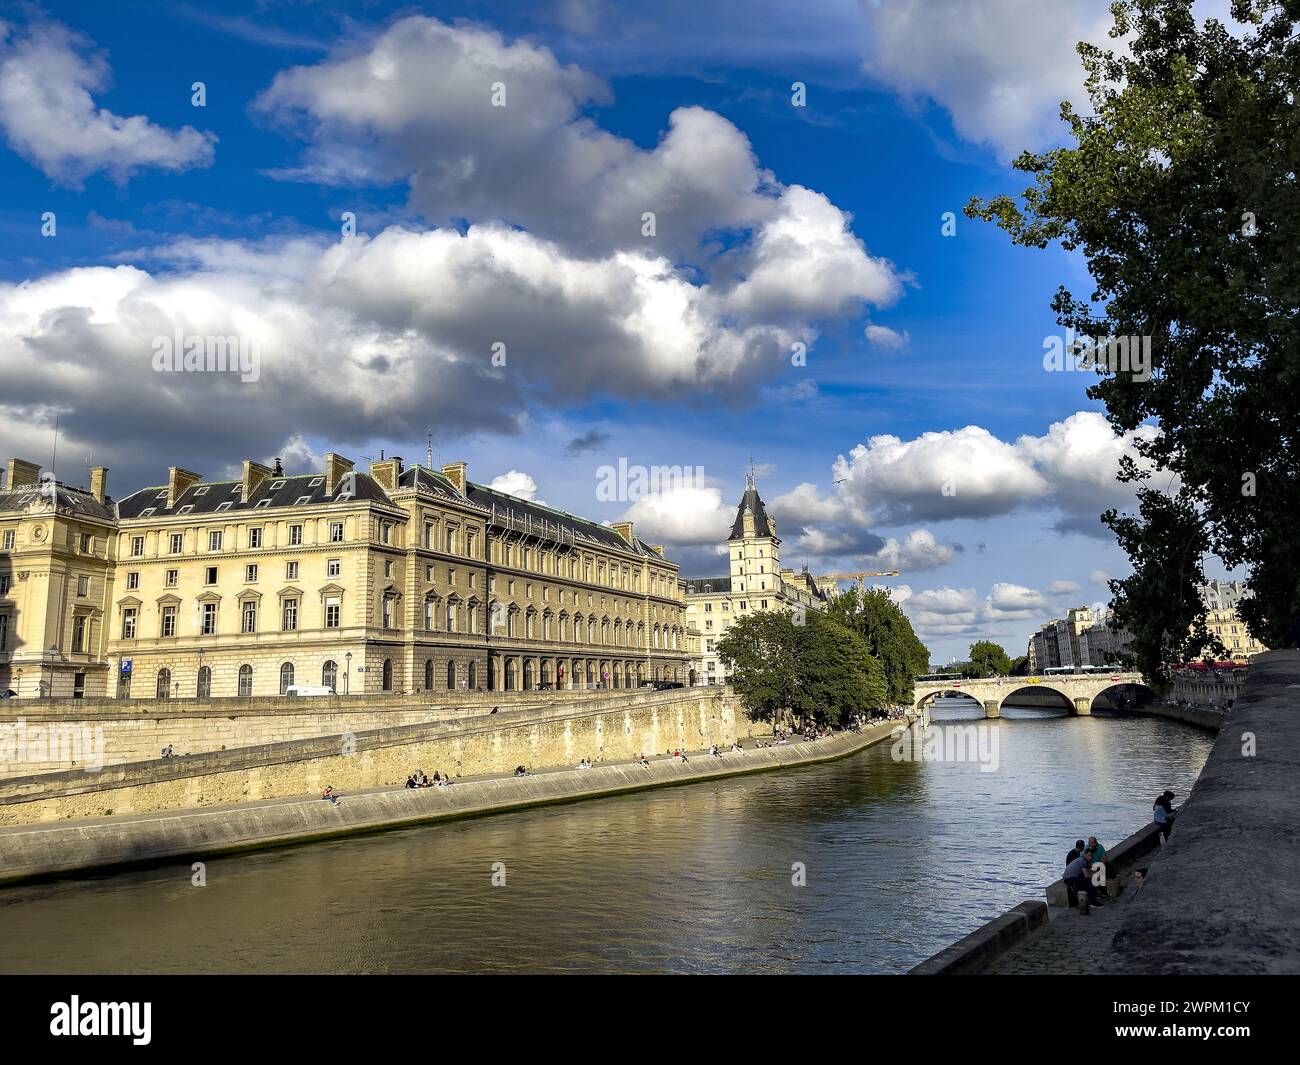 Bank of the River Seine, Ile de la Cite, and Palais de Justice, Paris, France, Europe Stock Photo